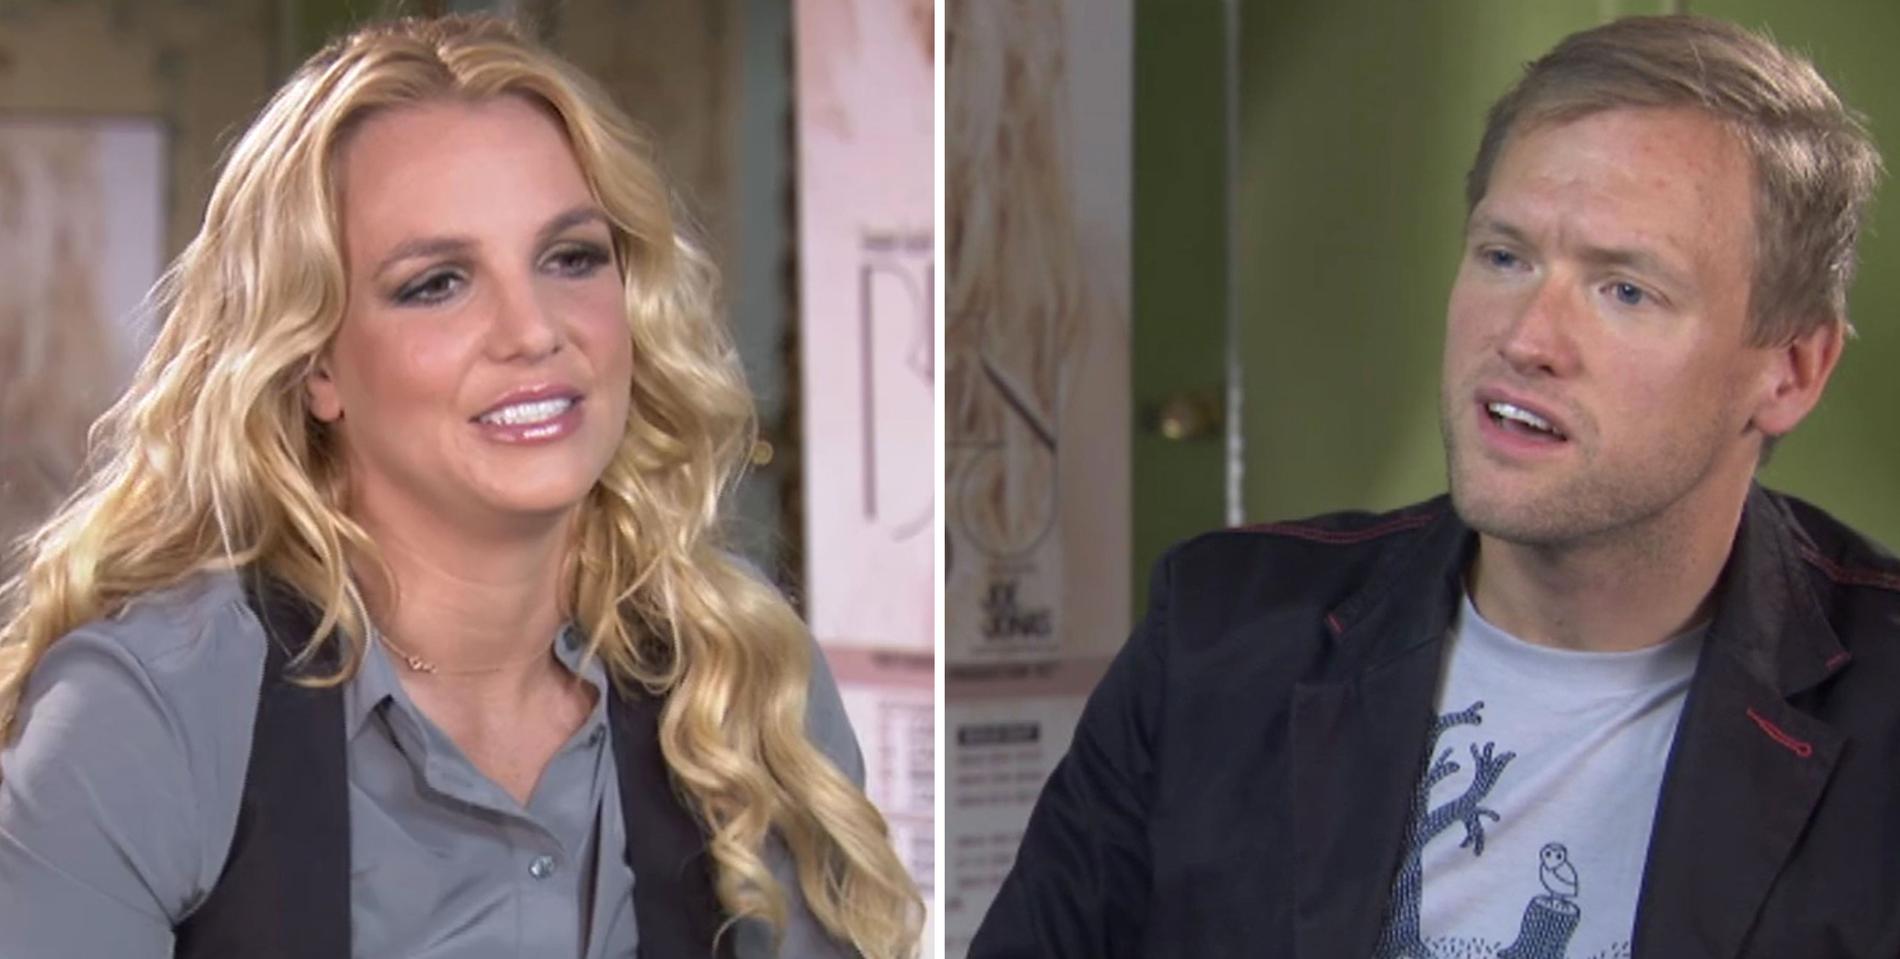 Aftonbladets intervjun med Britney Spears 2011 blev uppmärksammad efter att den stoppats av stjärnans team